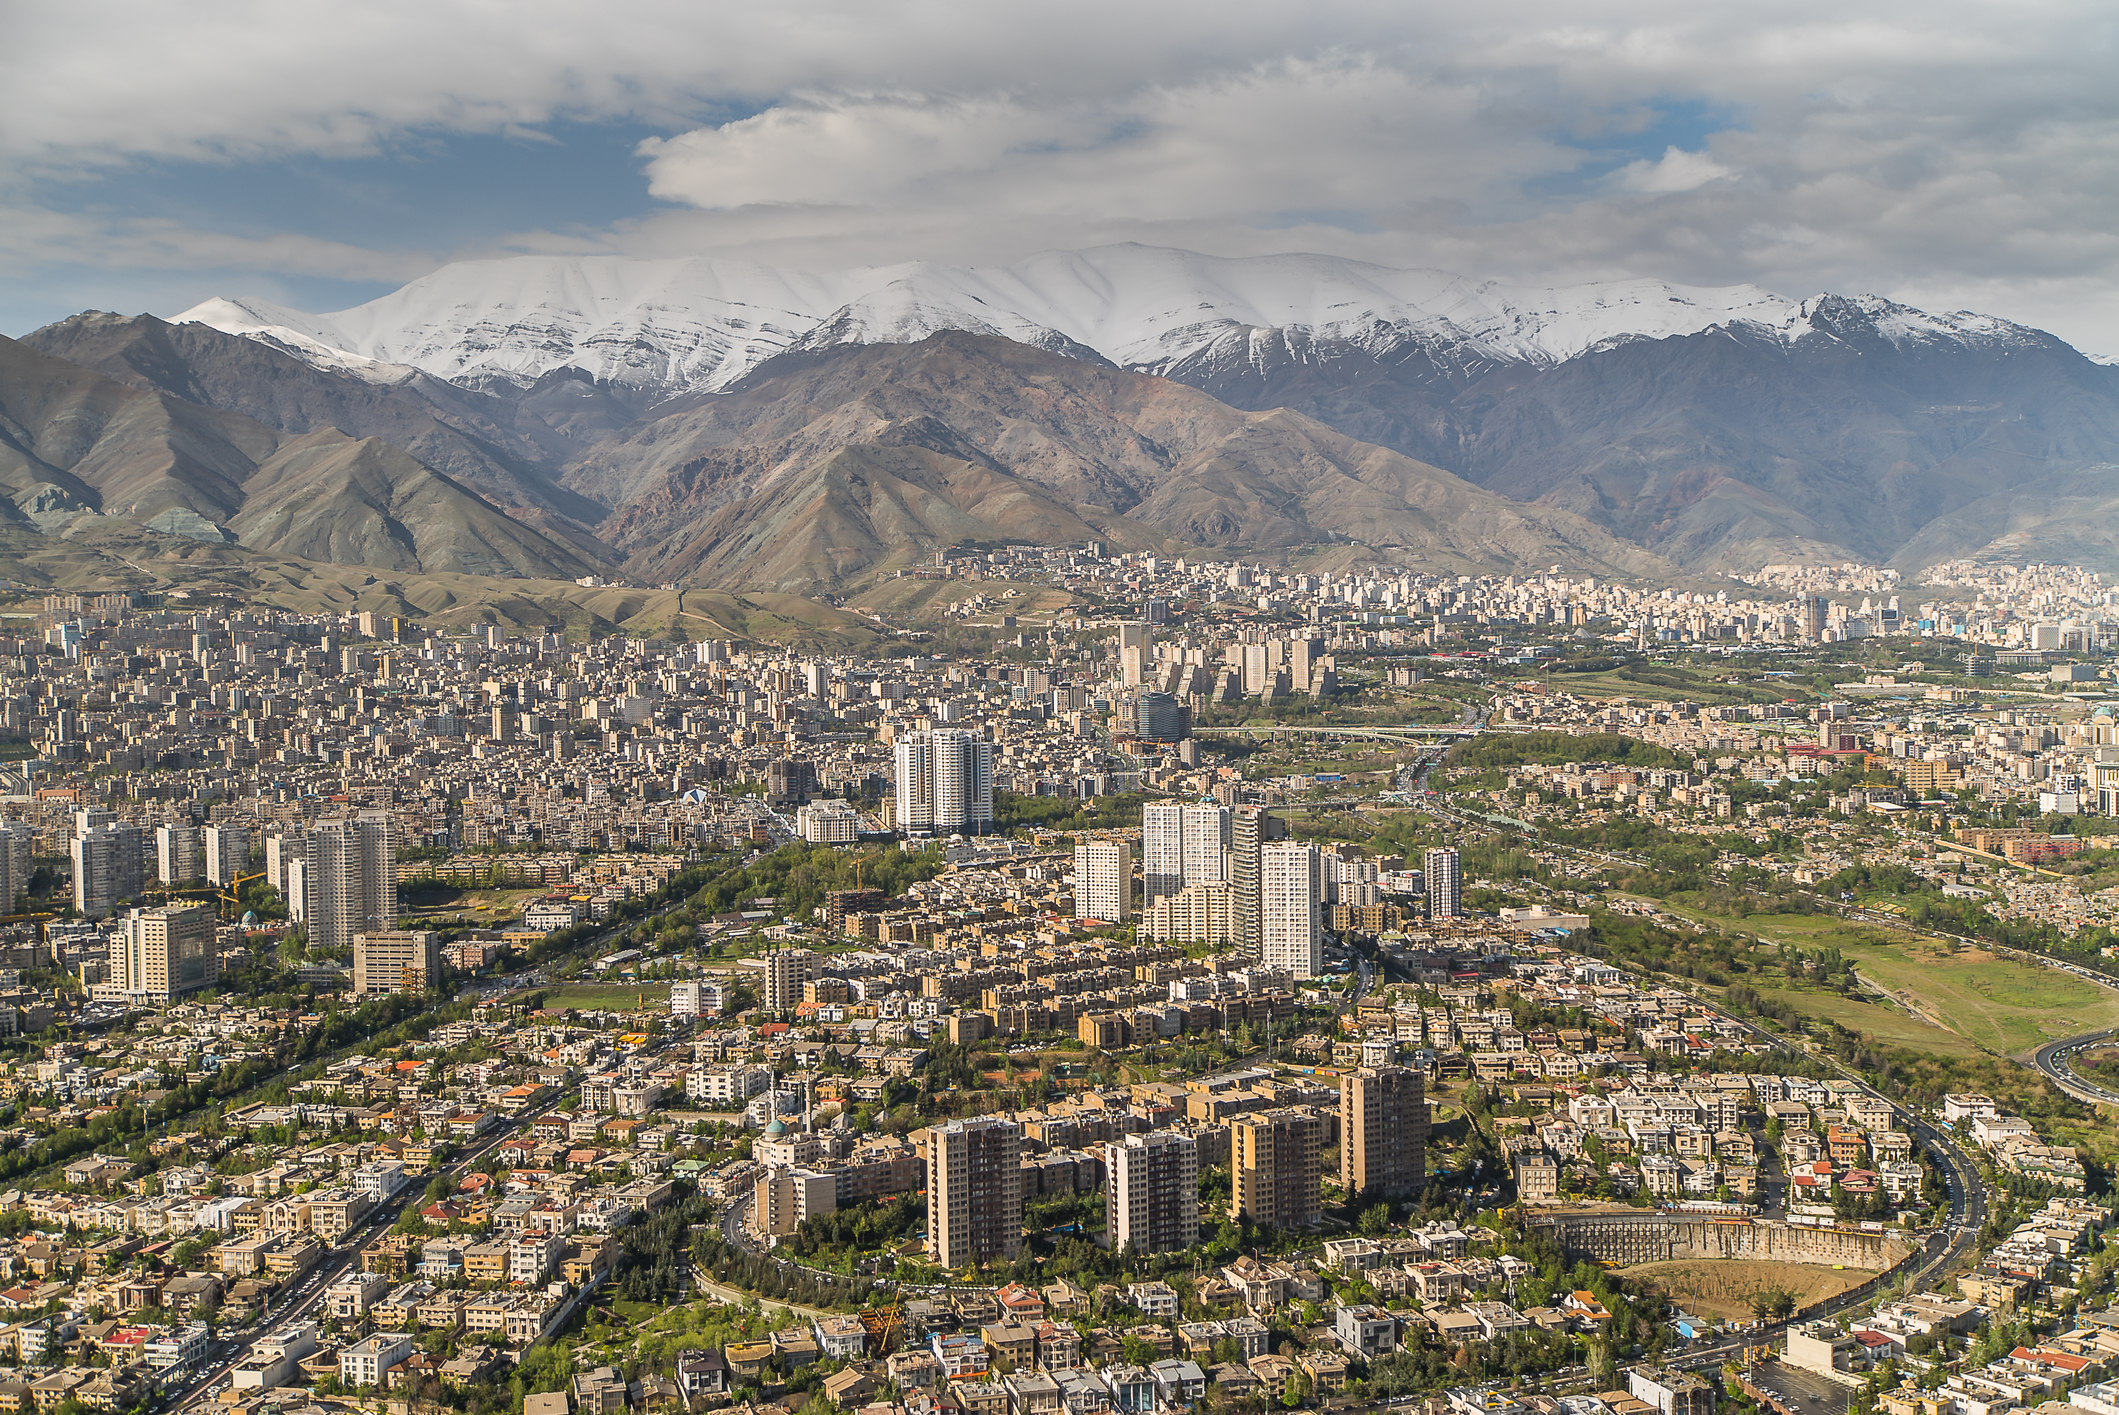 În capitala Teheran locuiesc peste 9 milioane de oameni